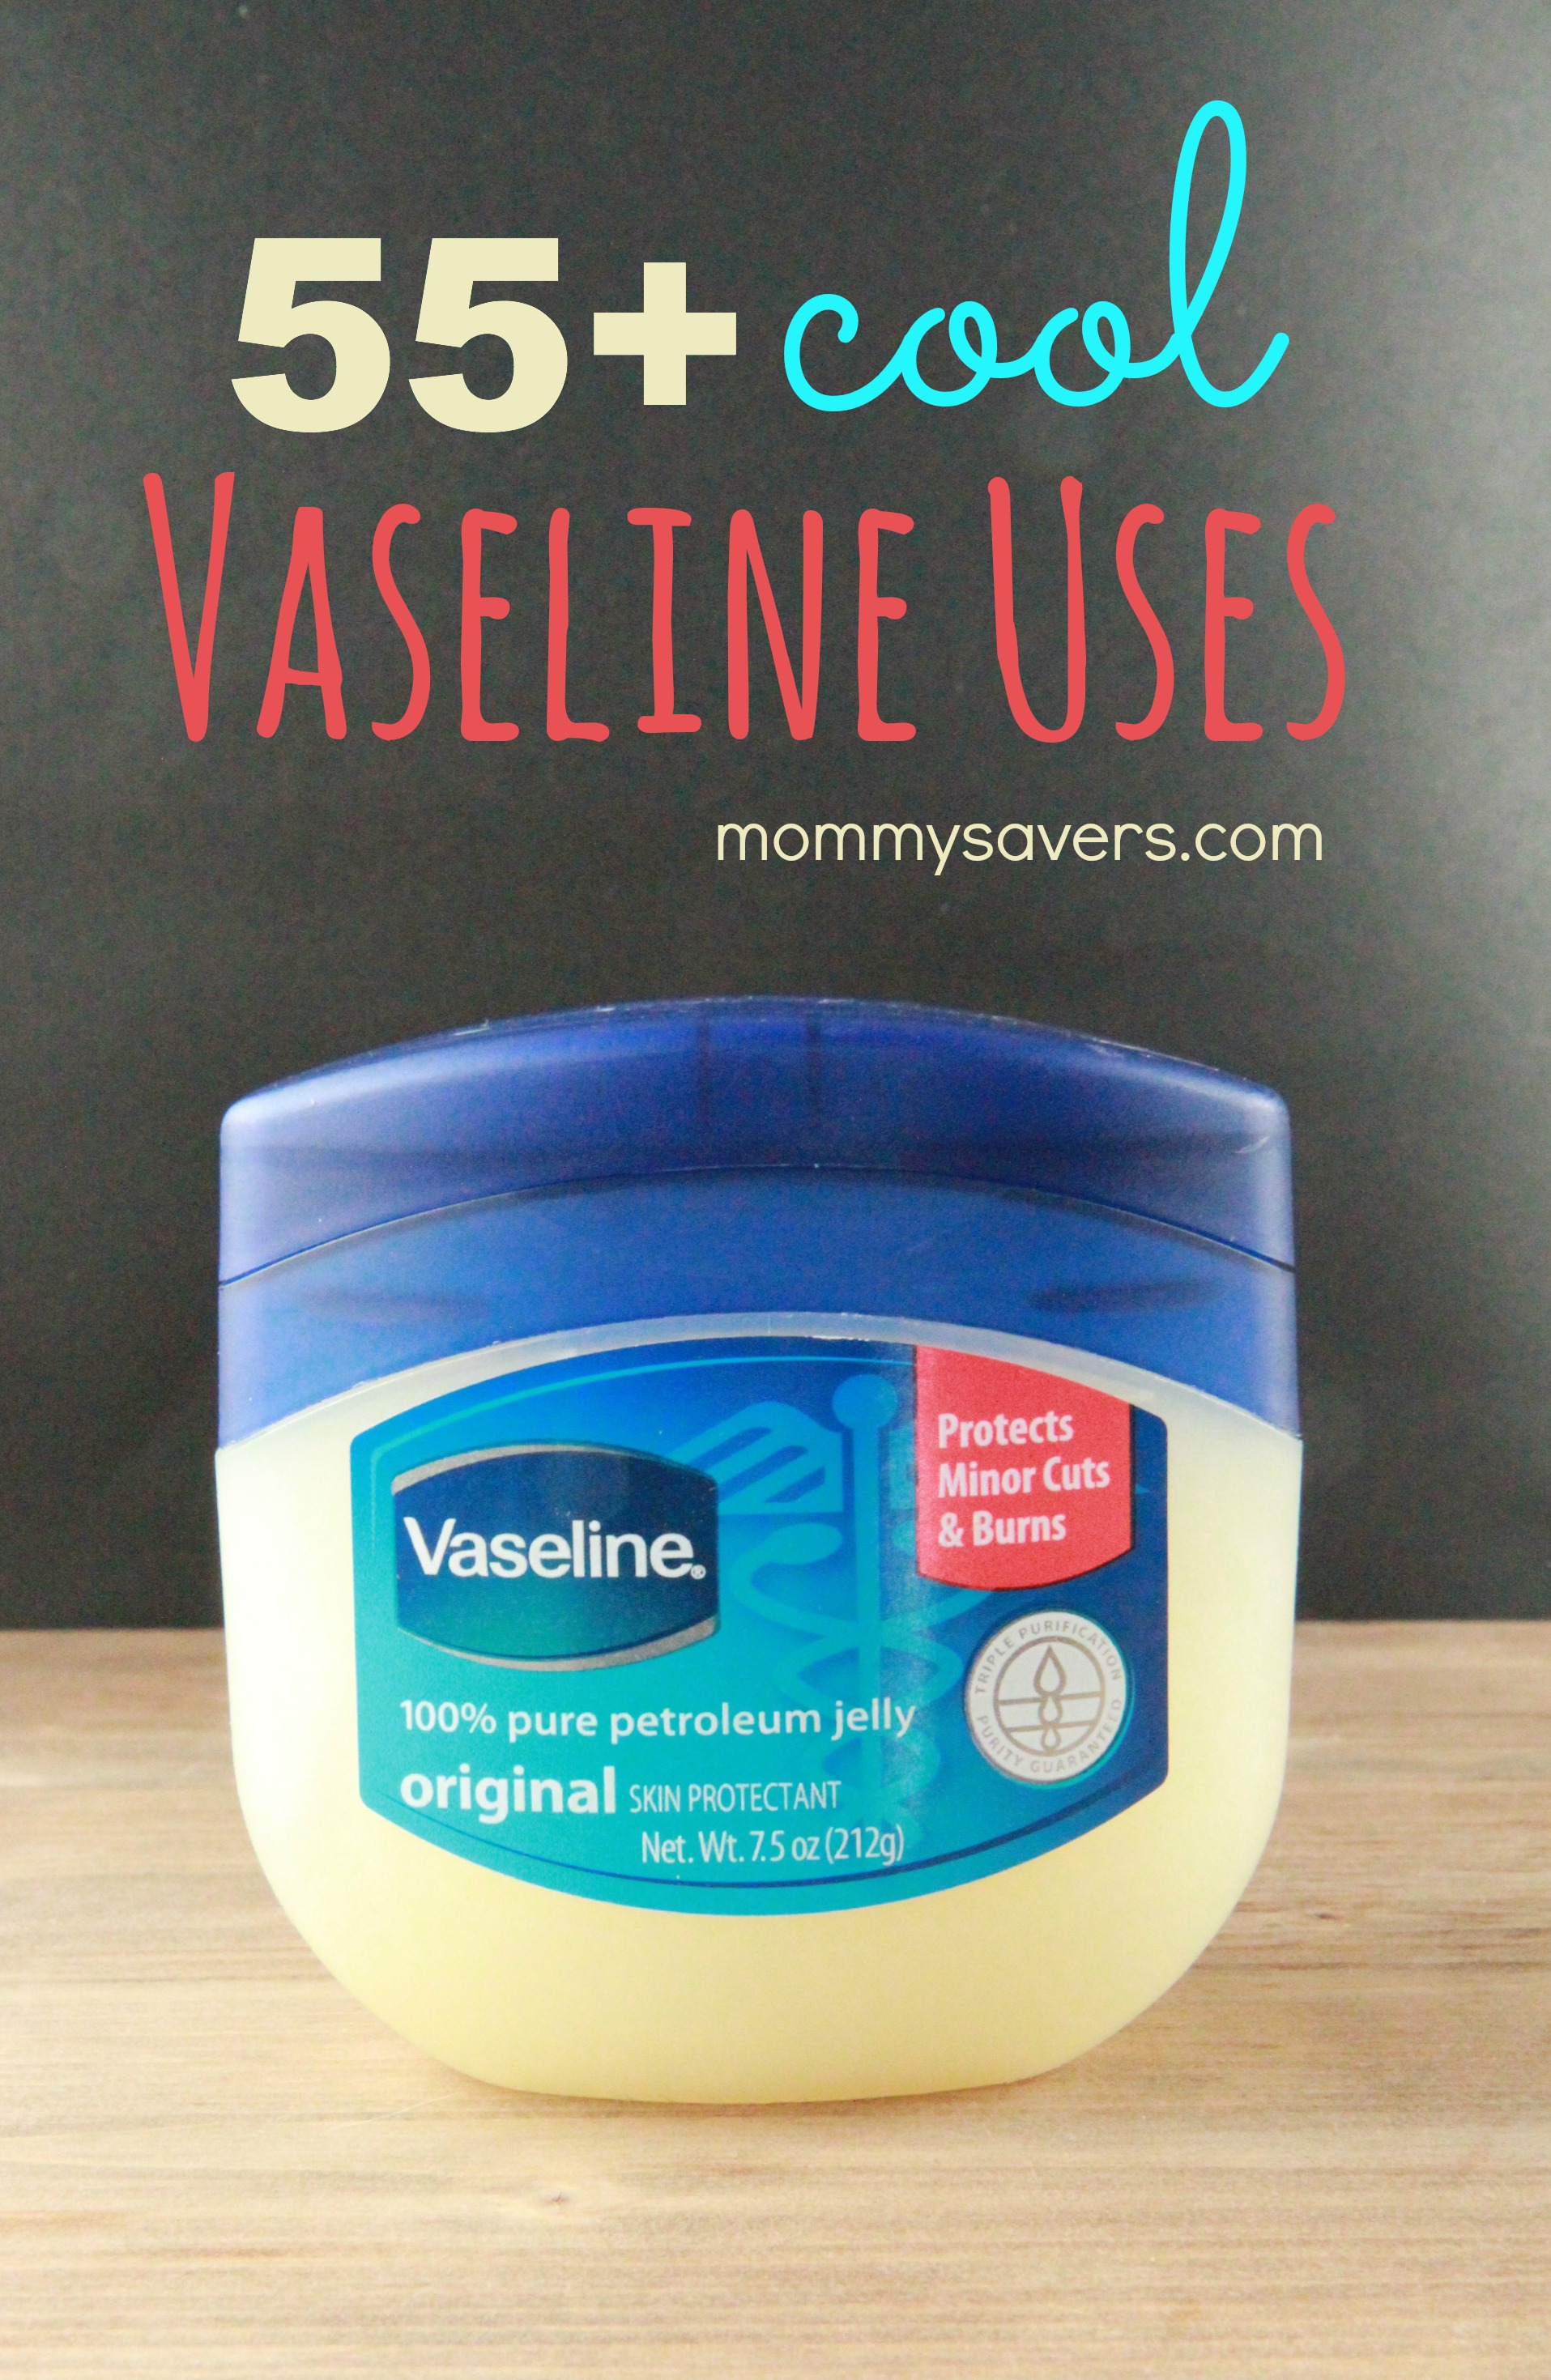 Vaseline Uses: 55+ Cool Ideas - Mommysavers | Mommysavers